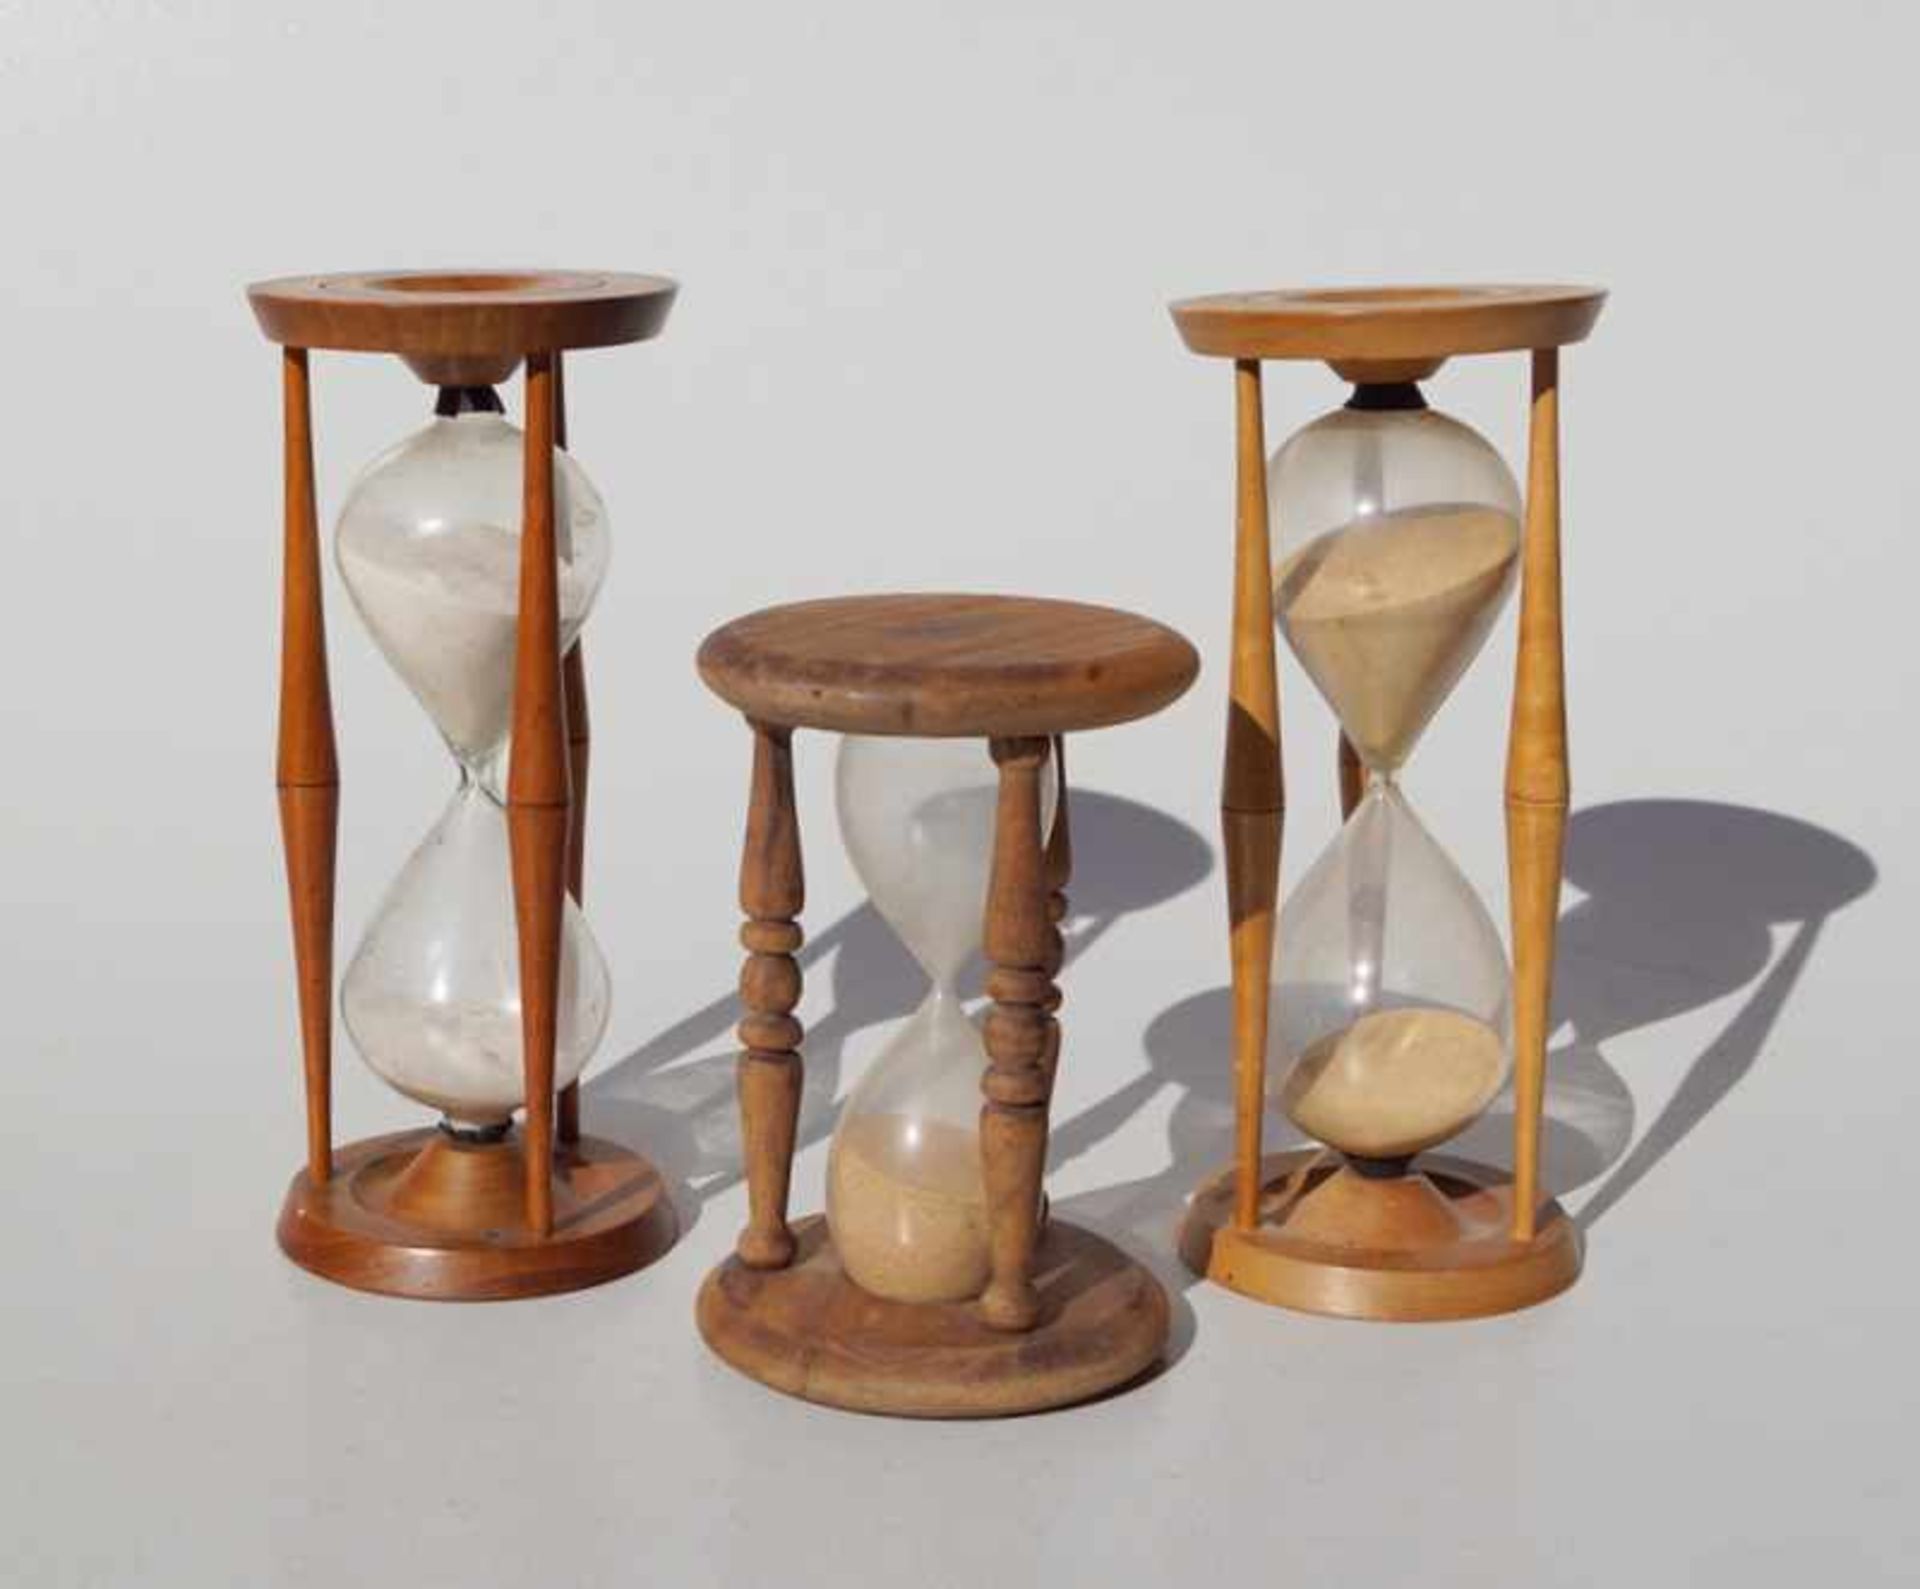 Sammlung von drei Sanduhren/ Stundengläsern Gestell aus Holz mit Glaskolben, Sandfarbe braun und